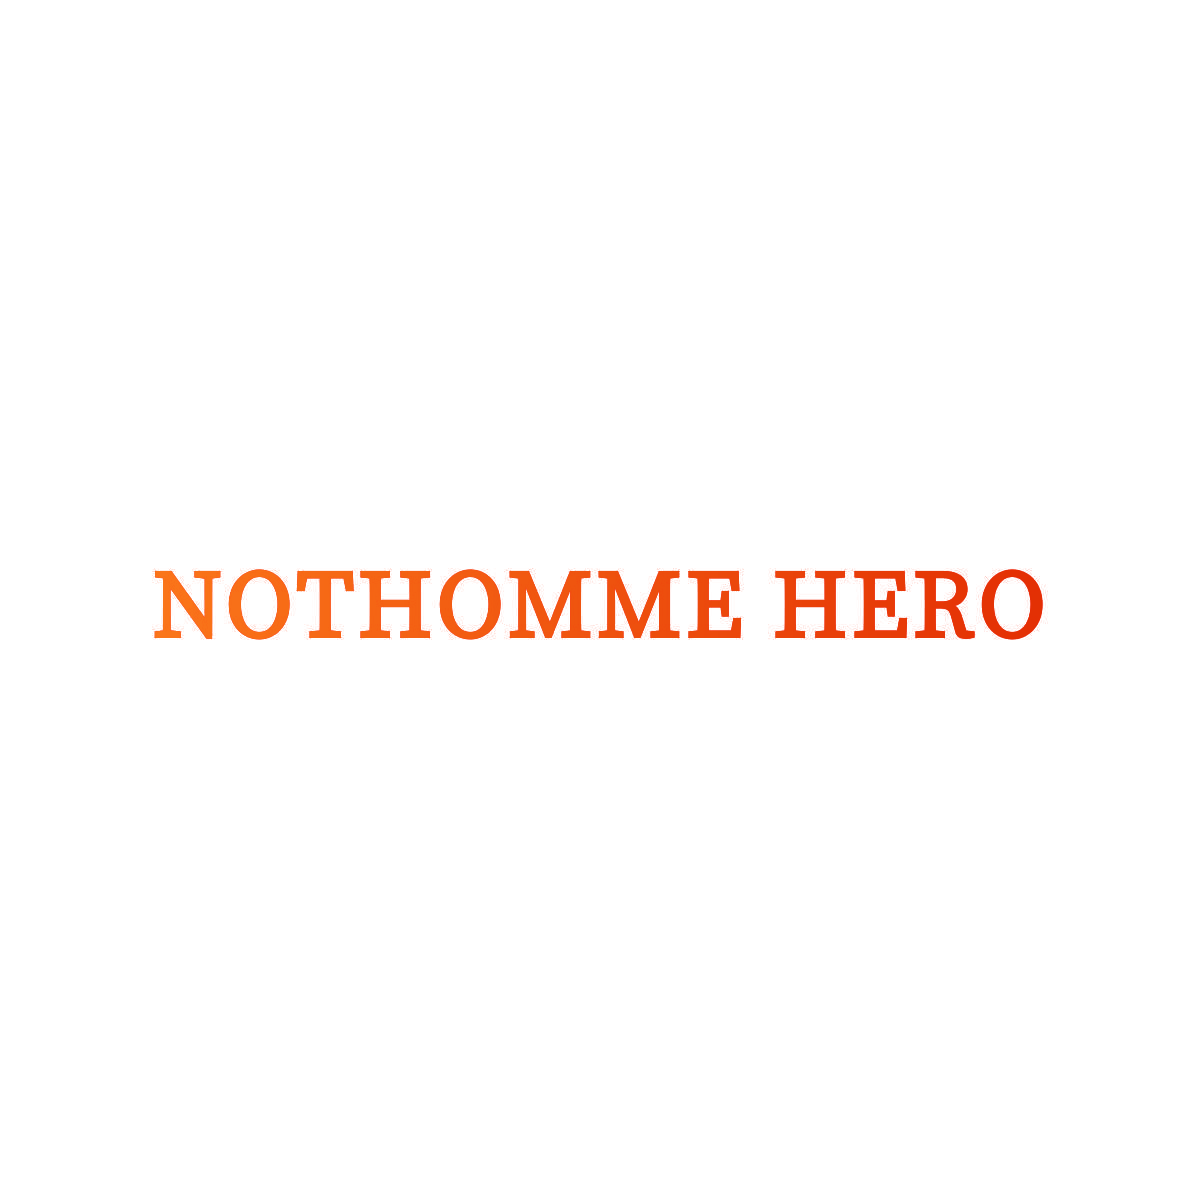 NOTHOMME HERO